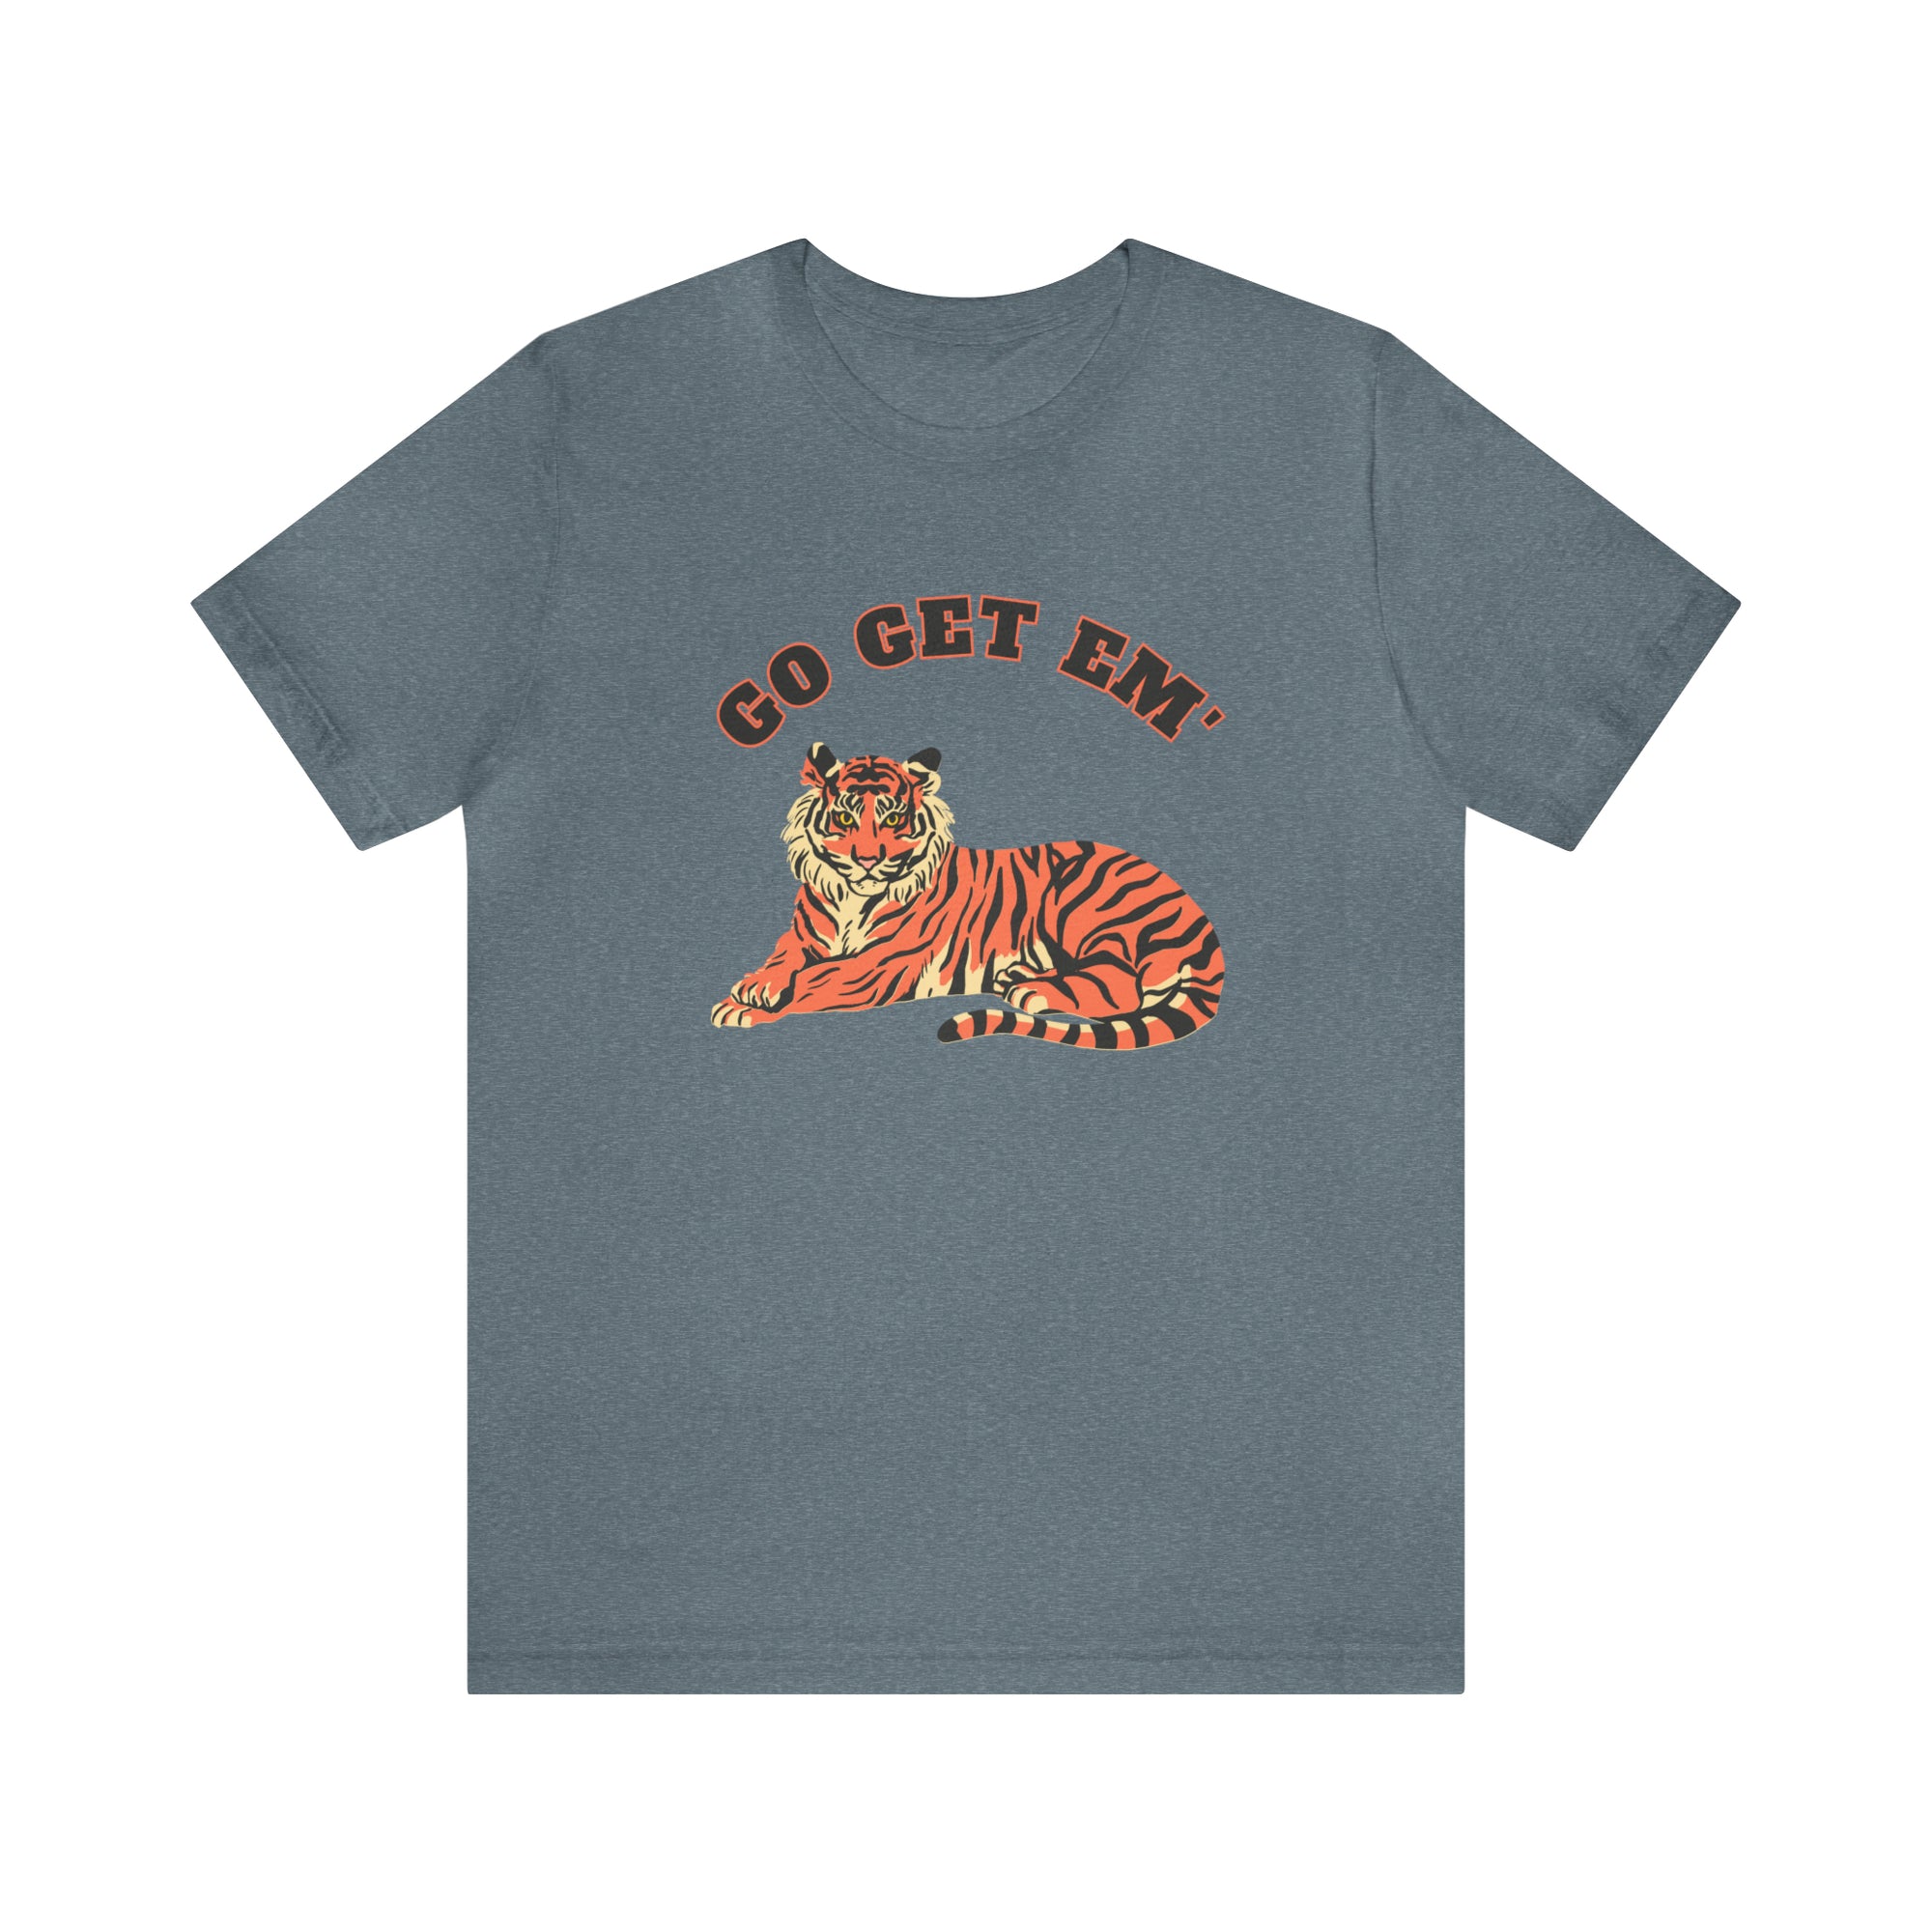 Go Get Em Tiger - T-Shirt